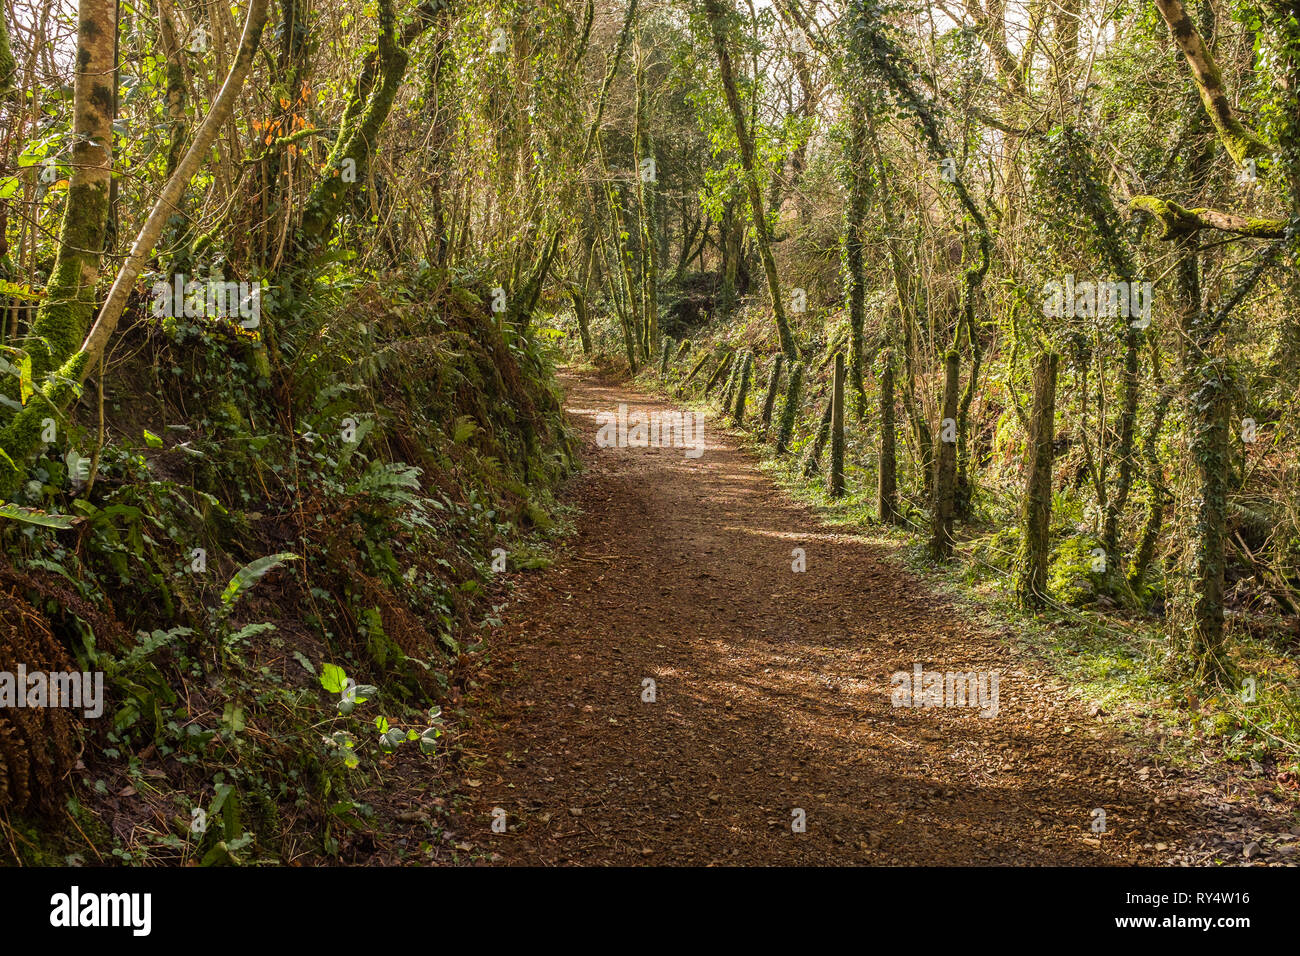 An English country lane, weaves through lush green foliage, Devon, England Stock Photo